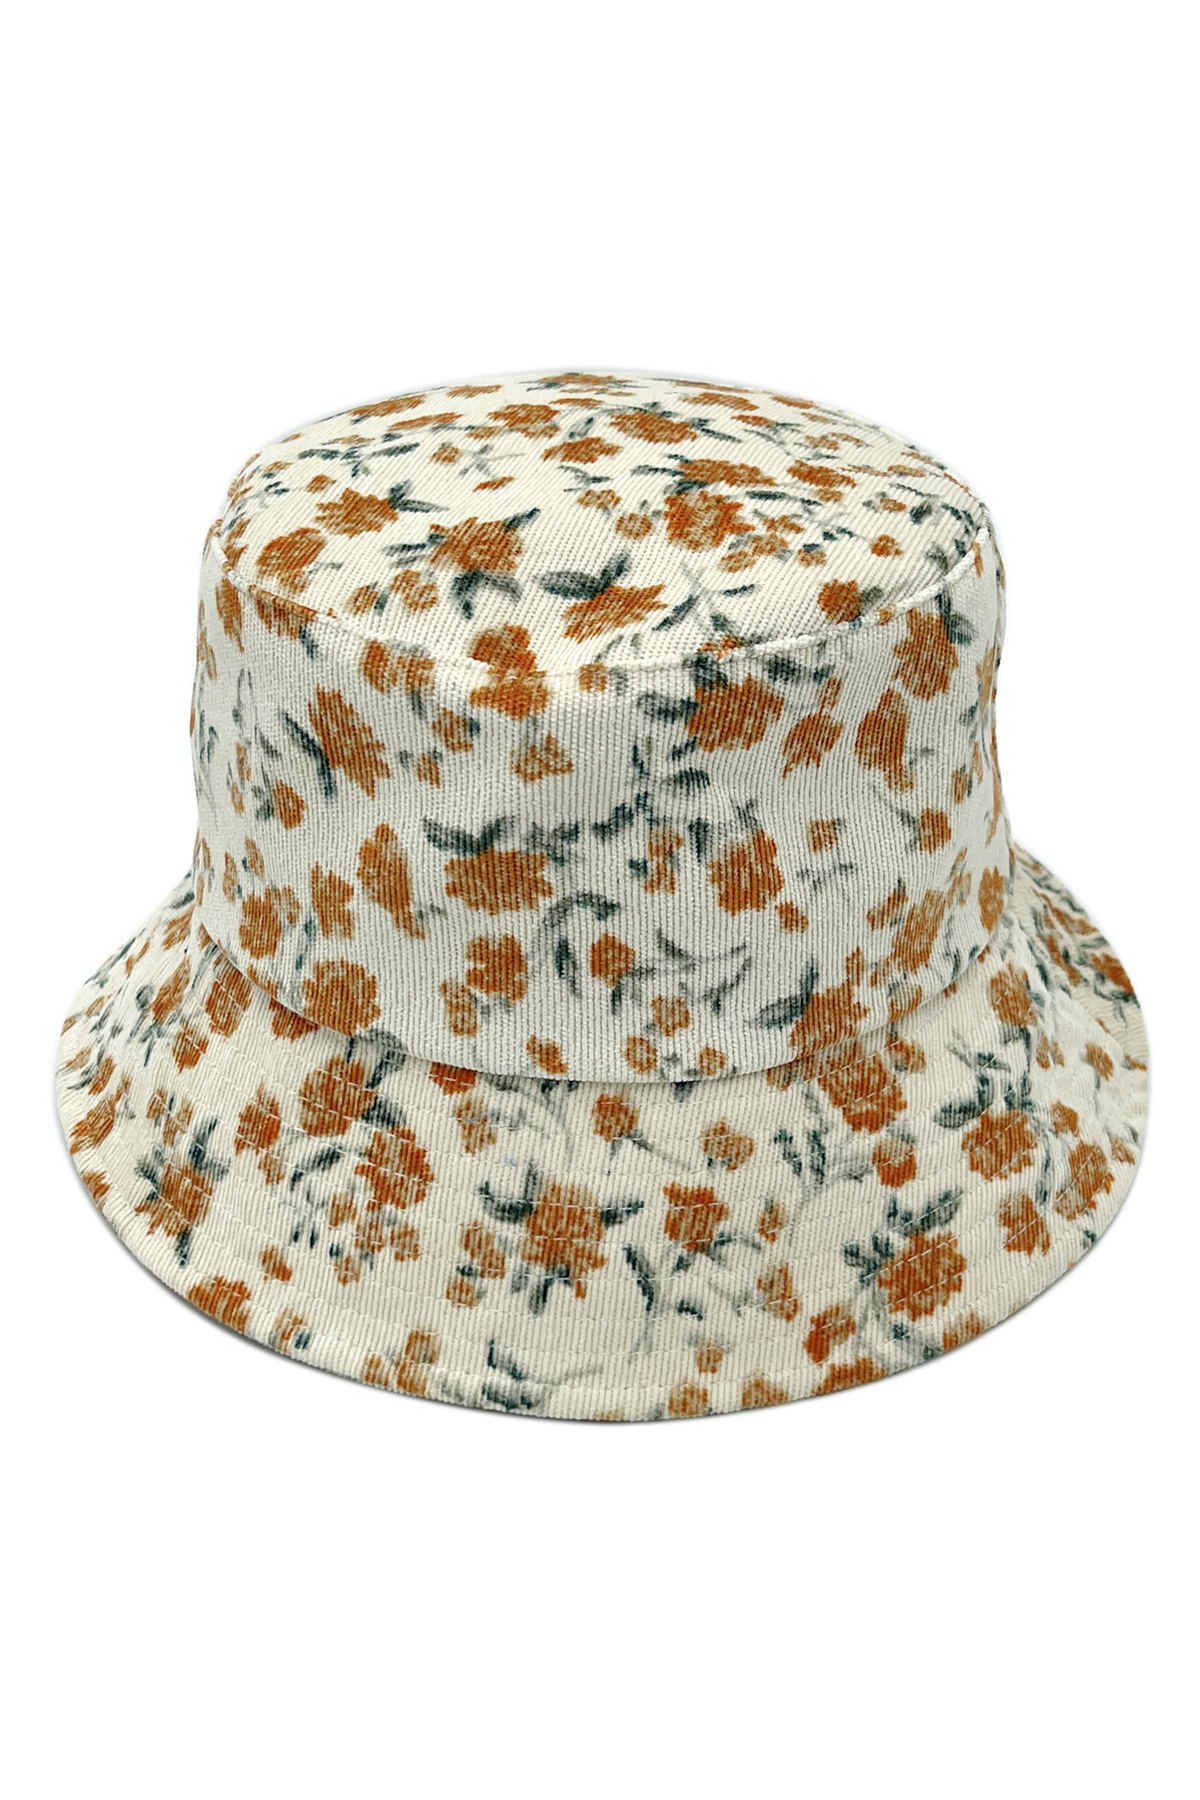 FLORAL PRINTED CORDUROY BUCKET HAT